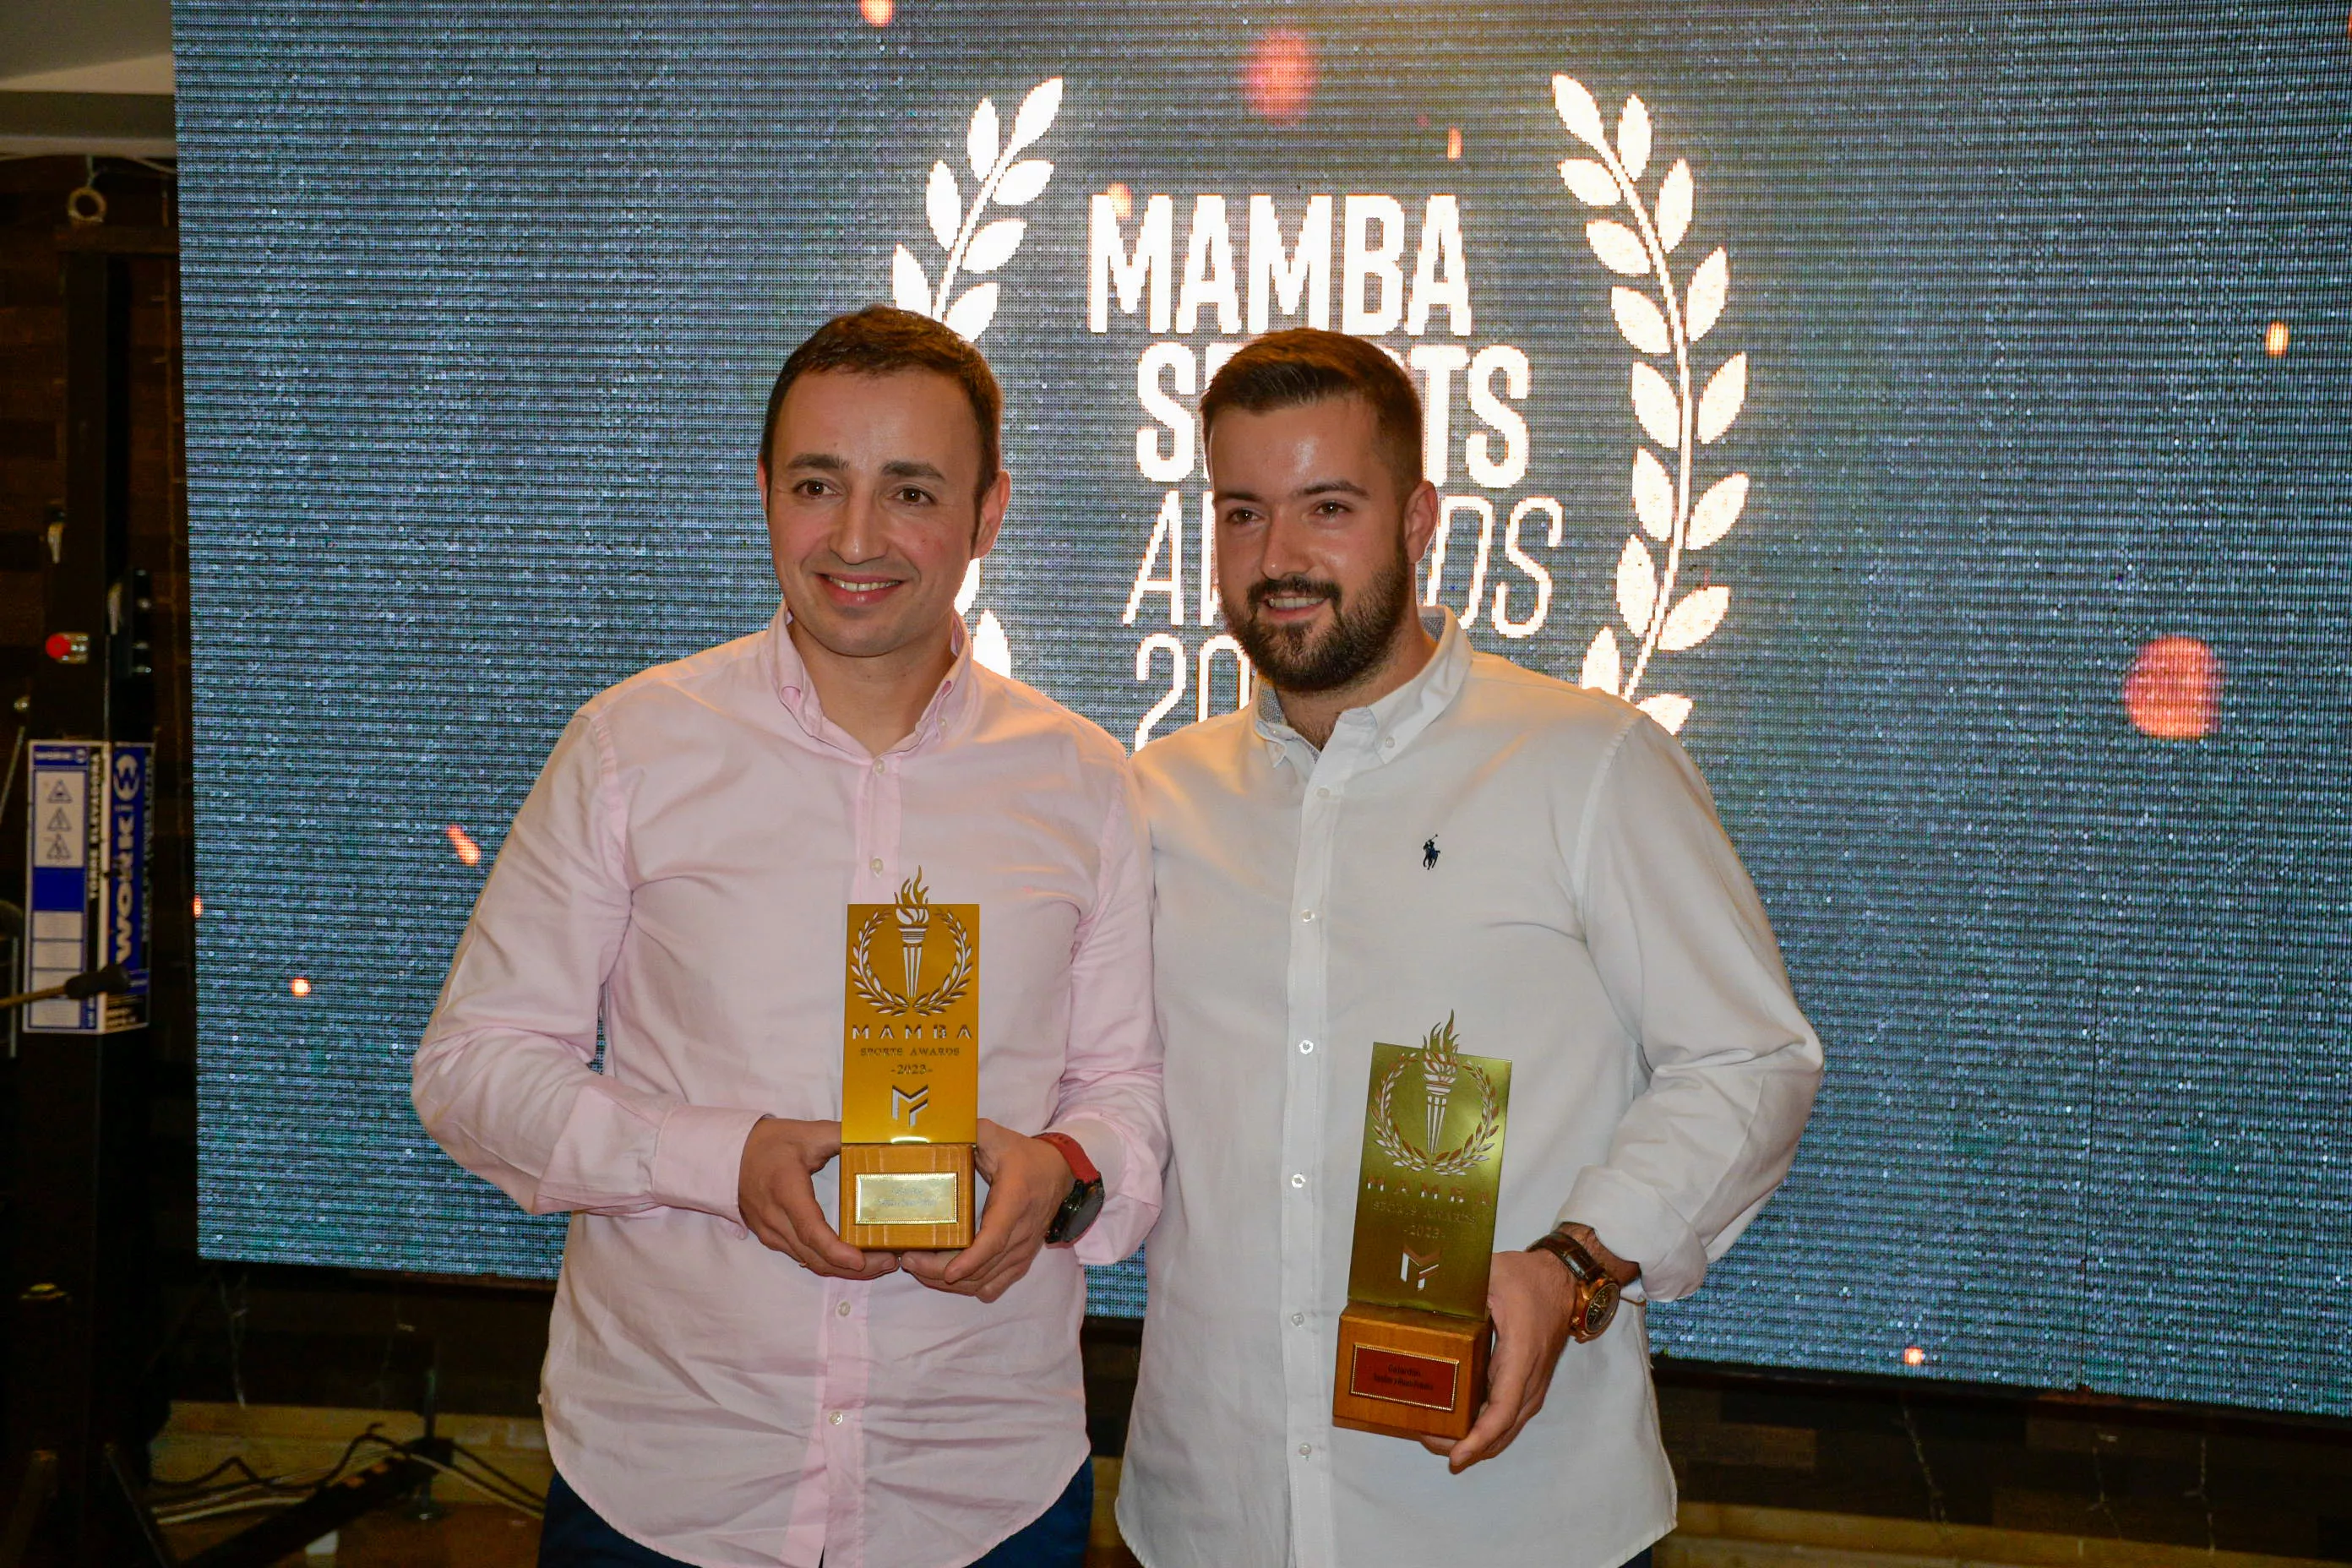 Mamba Sports Awards (11)